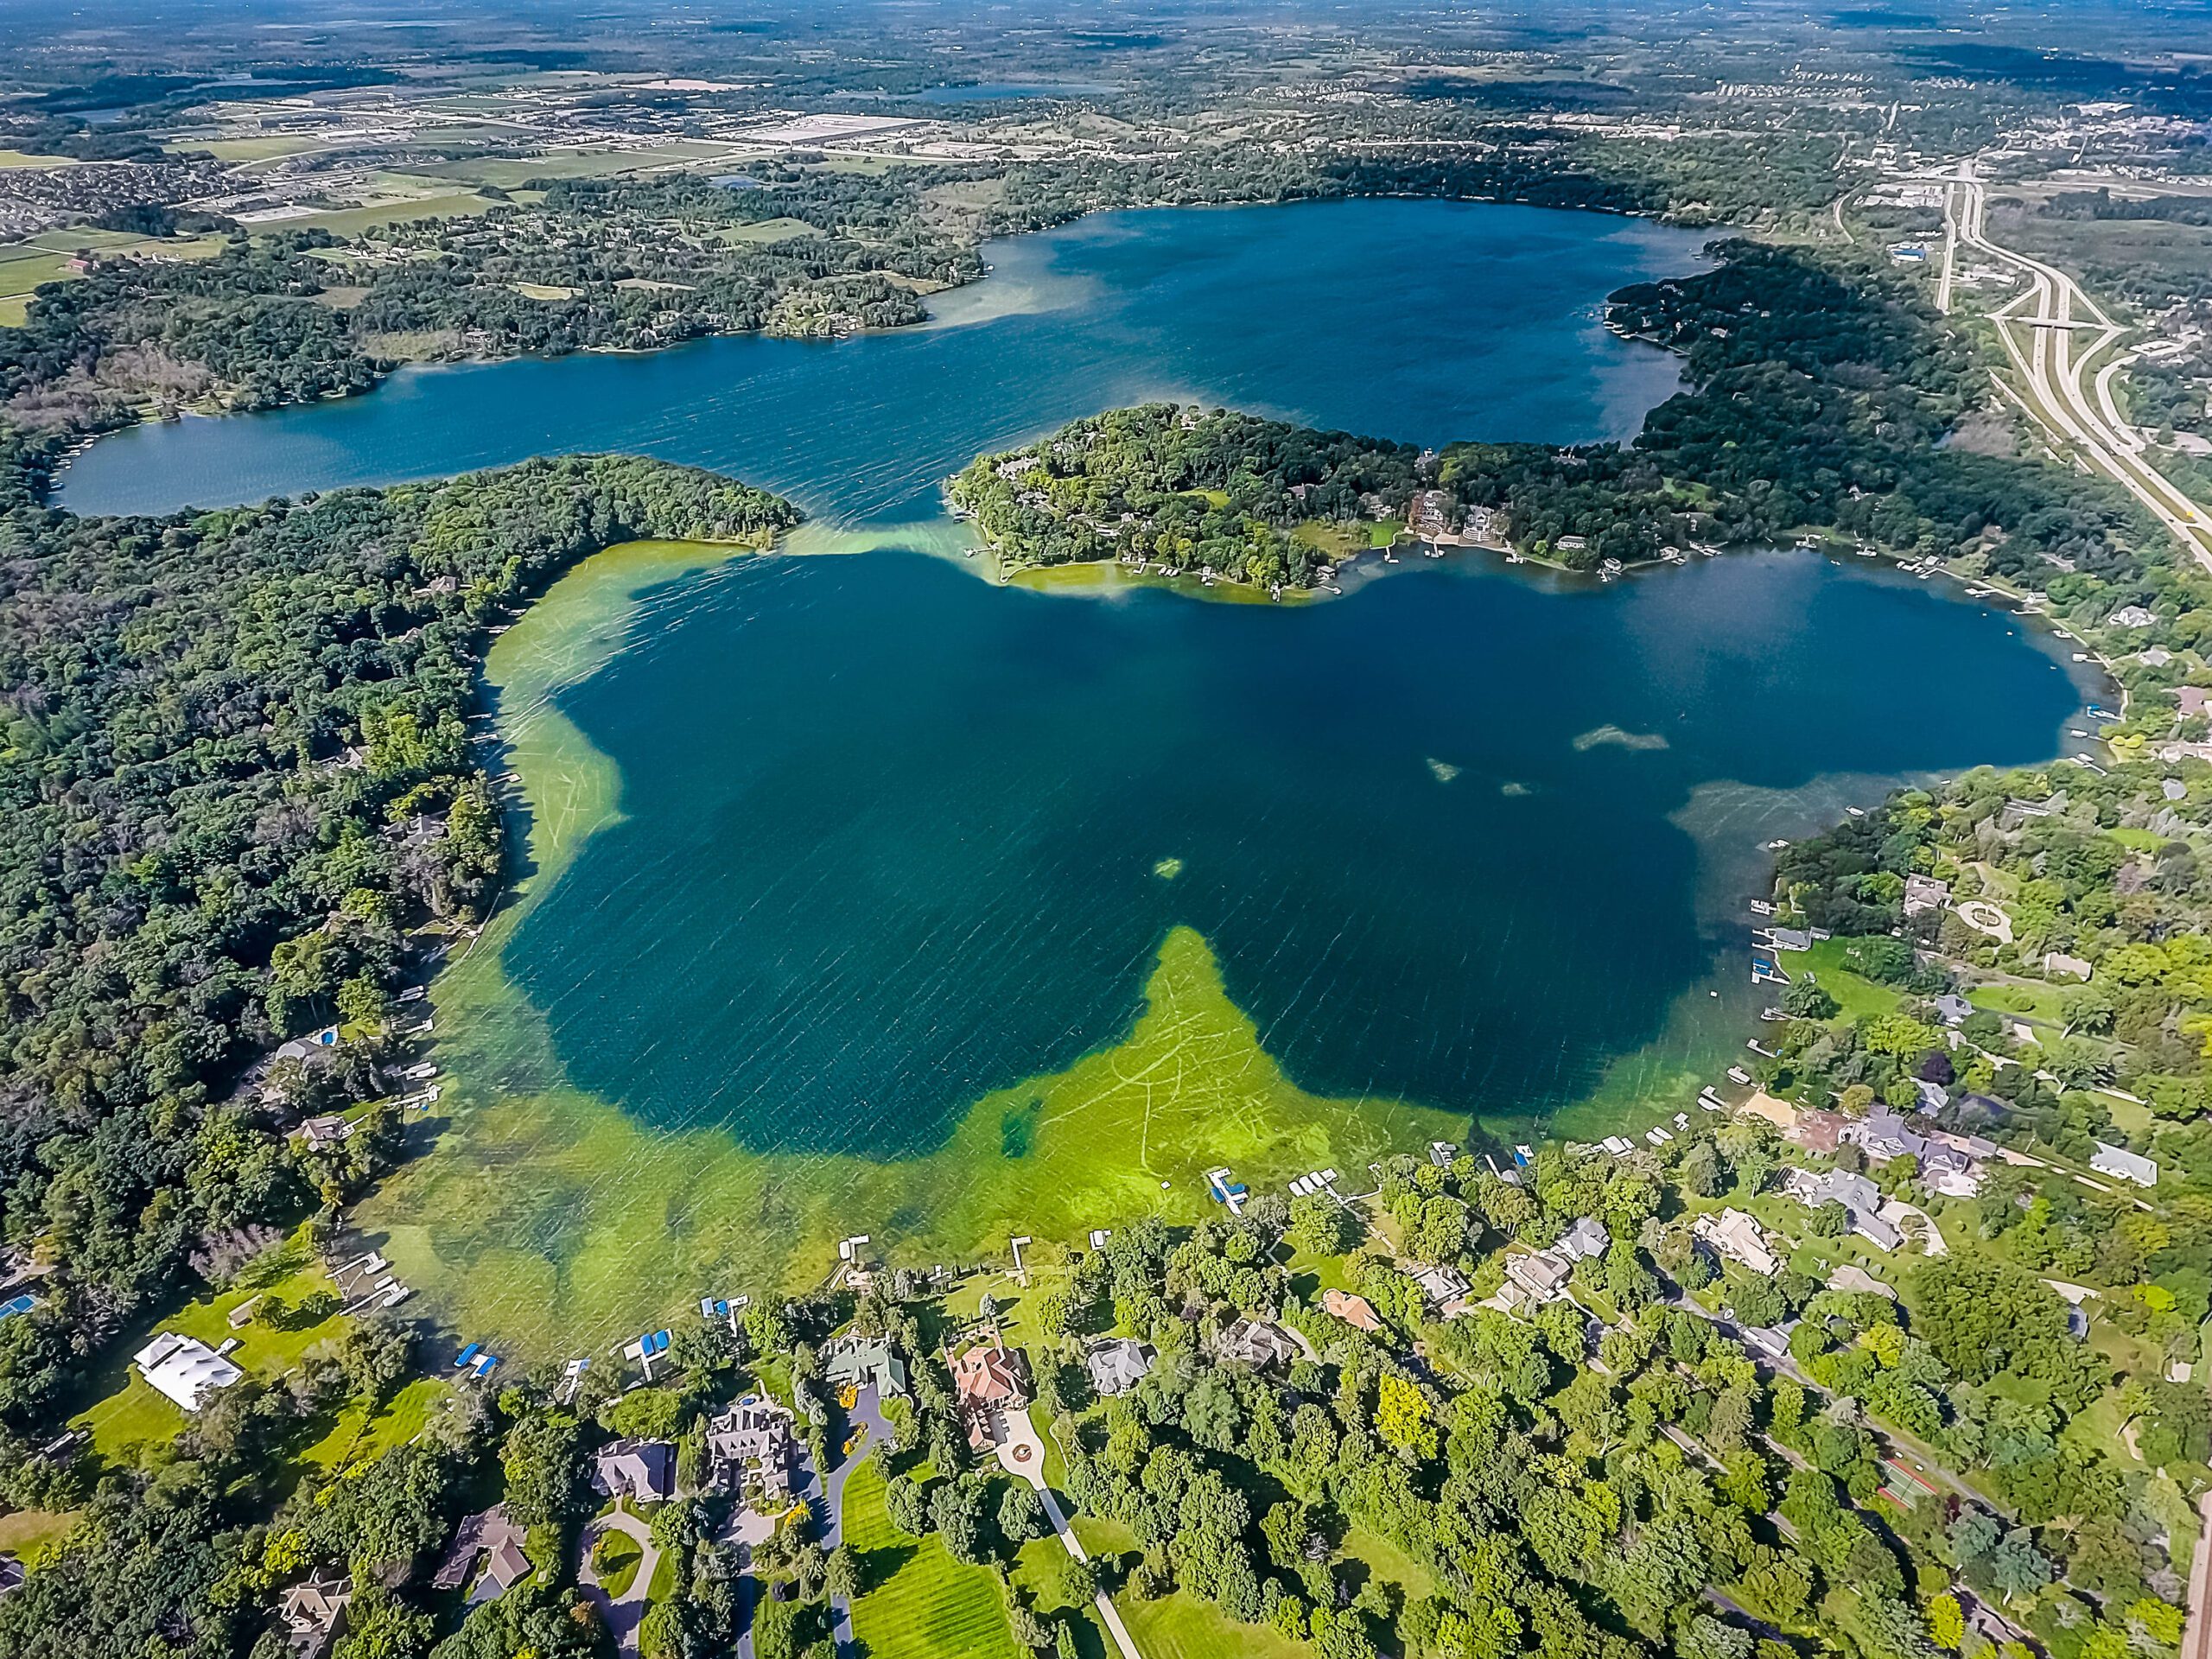 Oconomowoc Lake